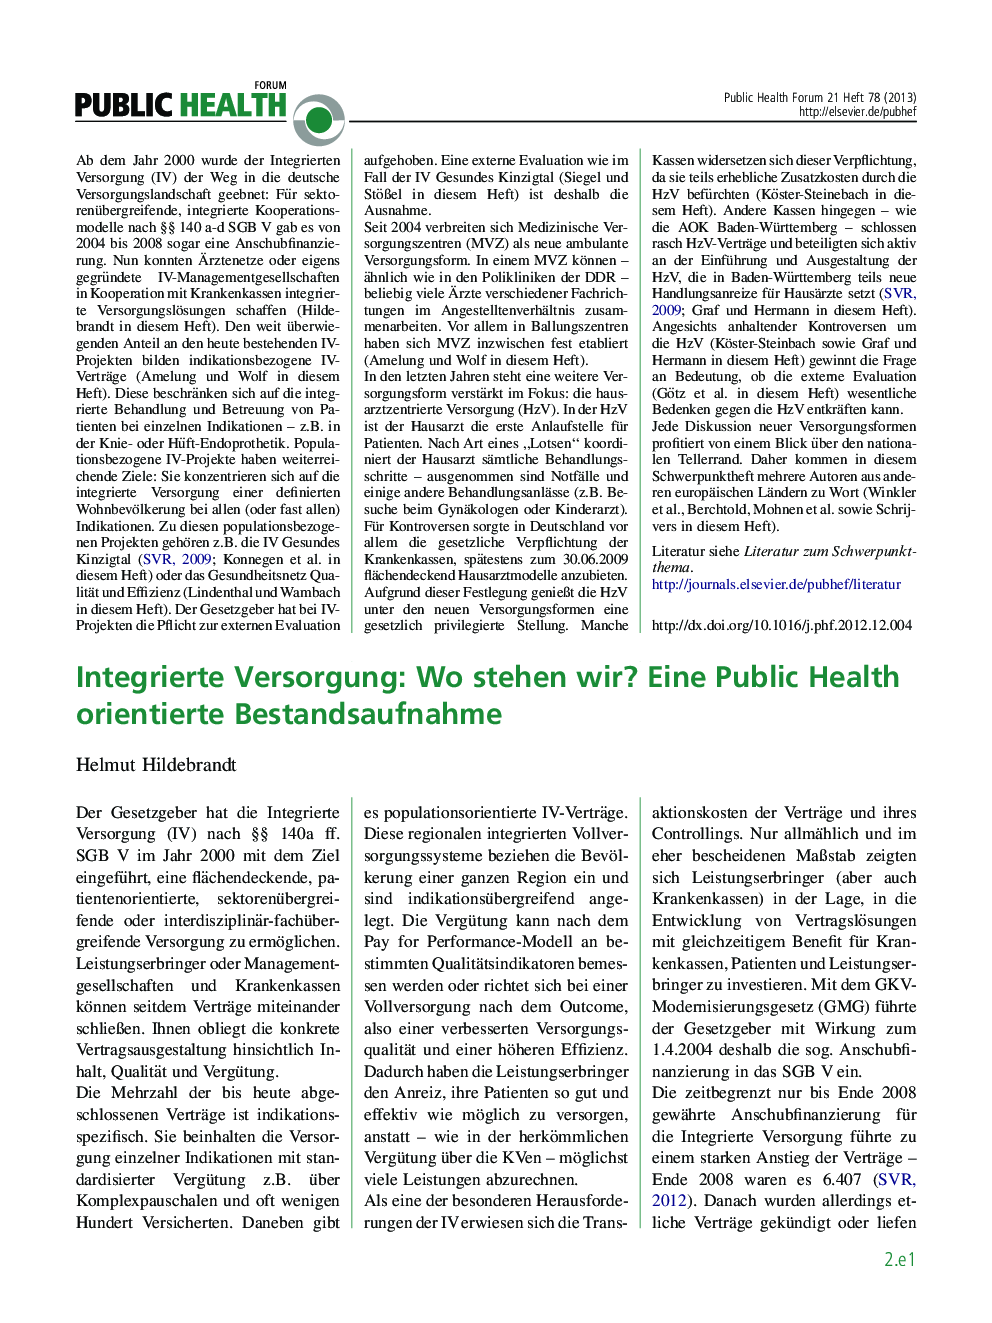 Integrierte Versorgung: Wo stehen wir? Eine Public Health orientierte Bestandsaufnahme